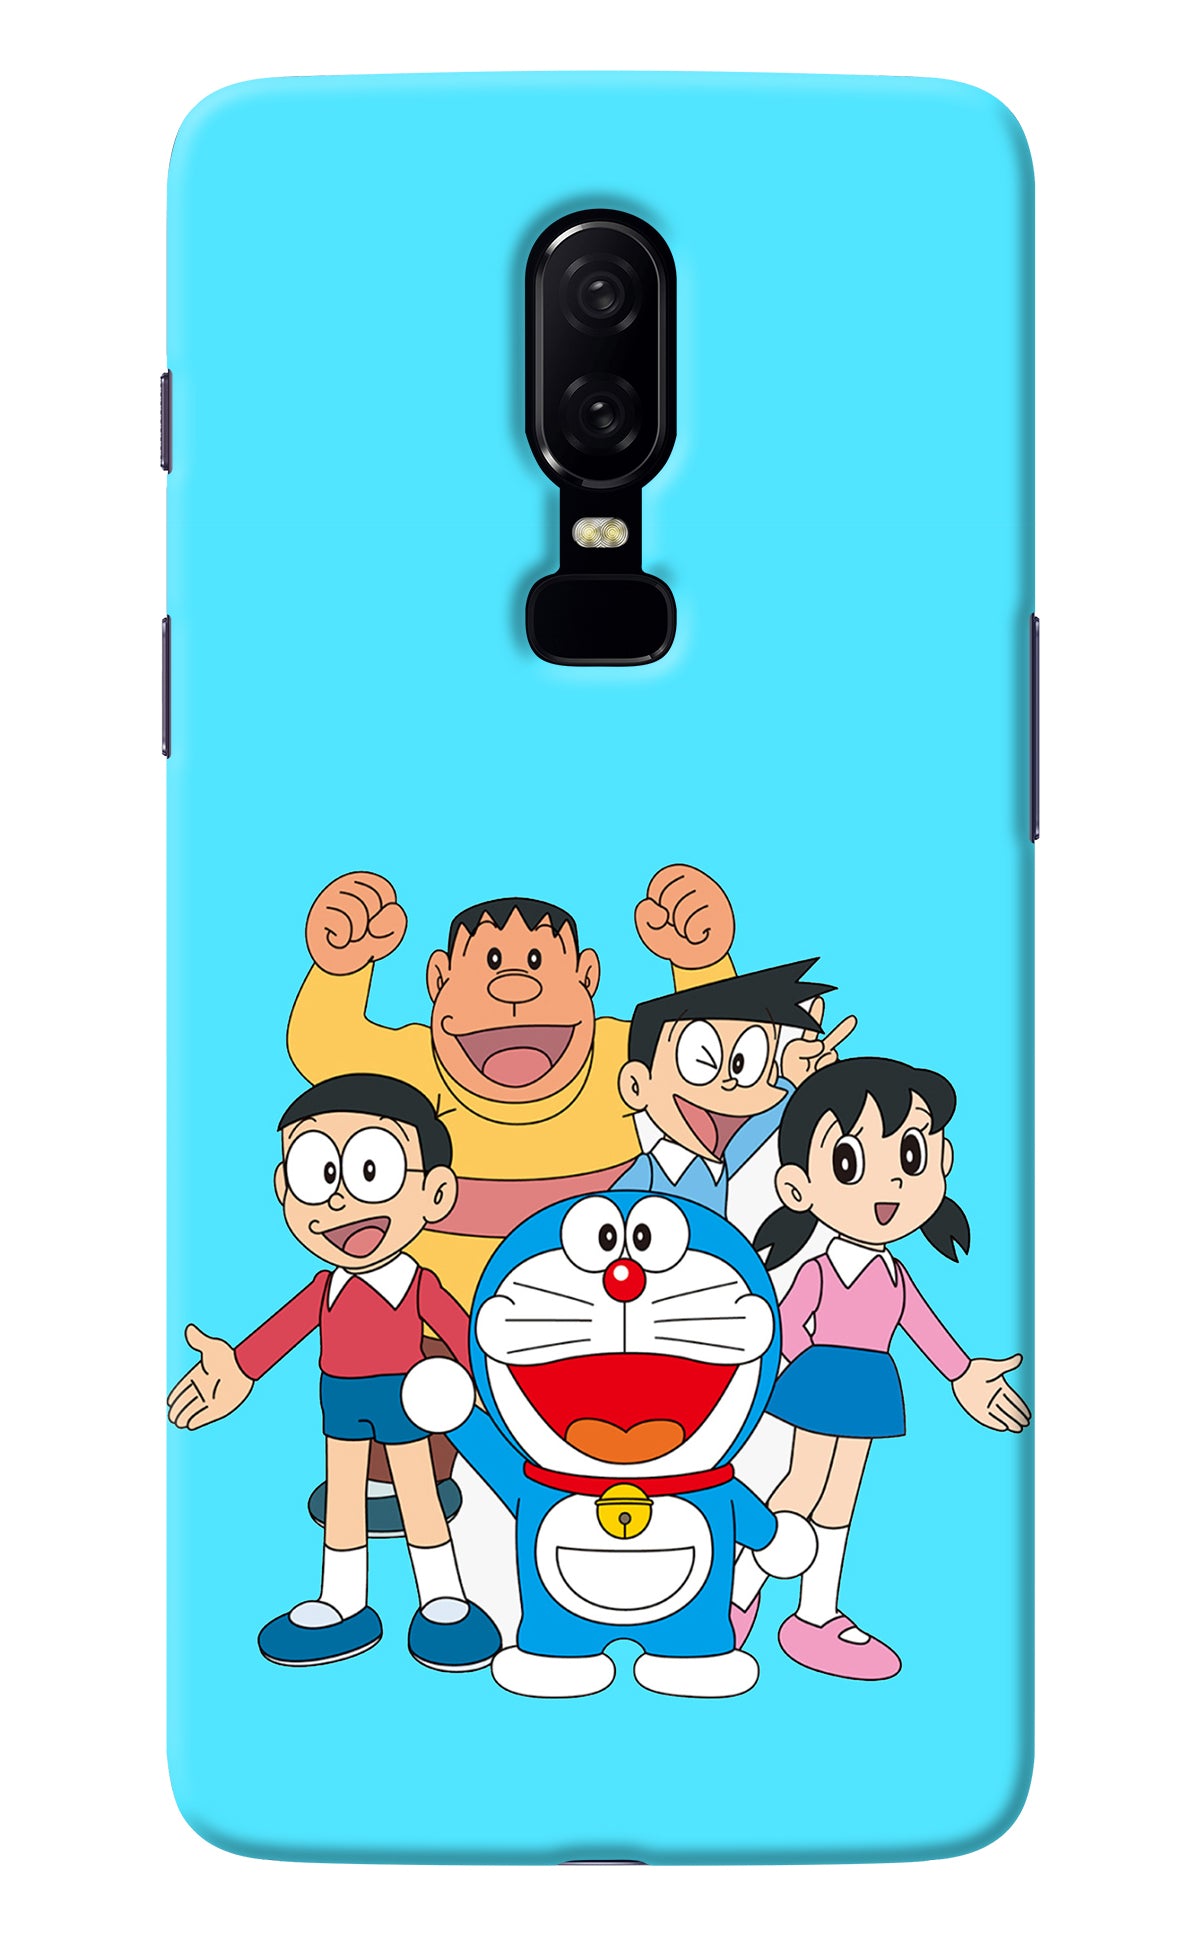 Doraemon Gang Oneplus 6 Back Cover